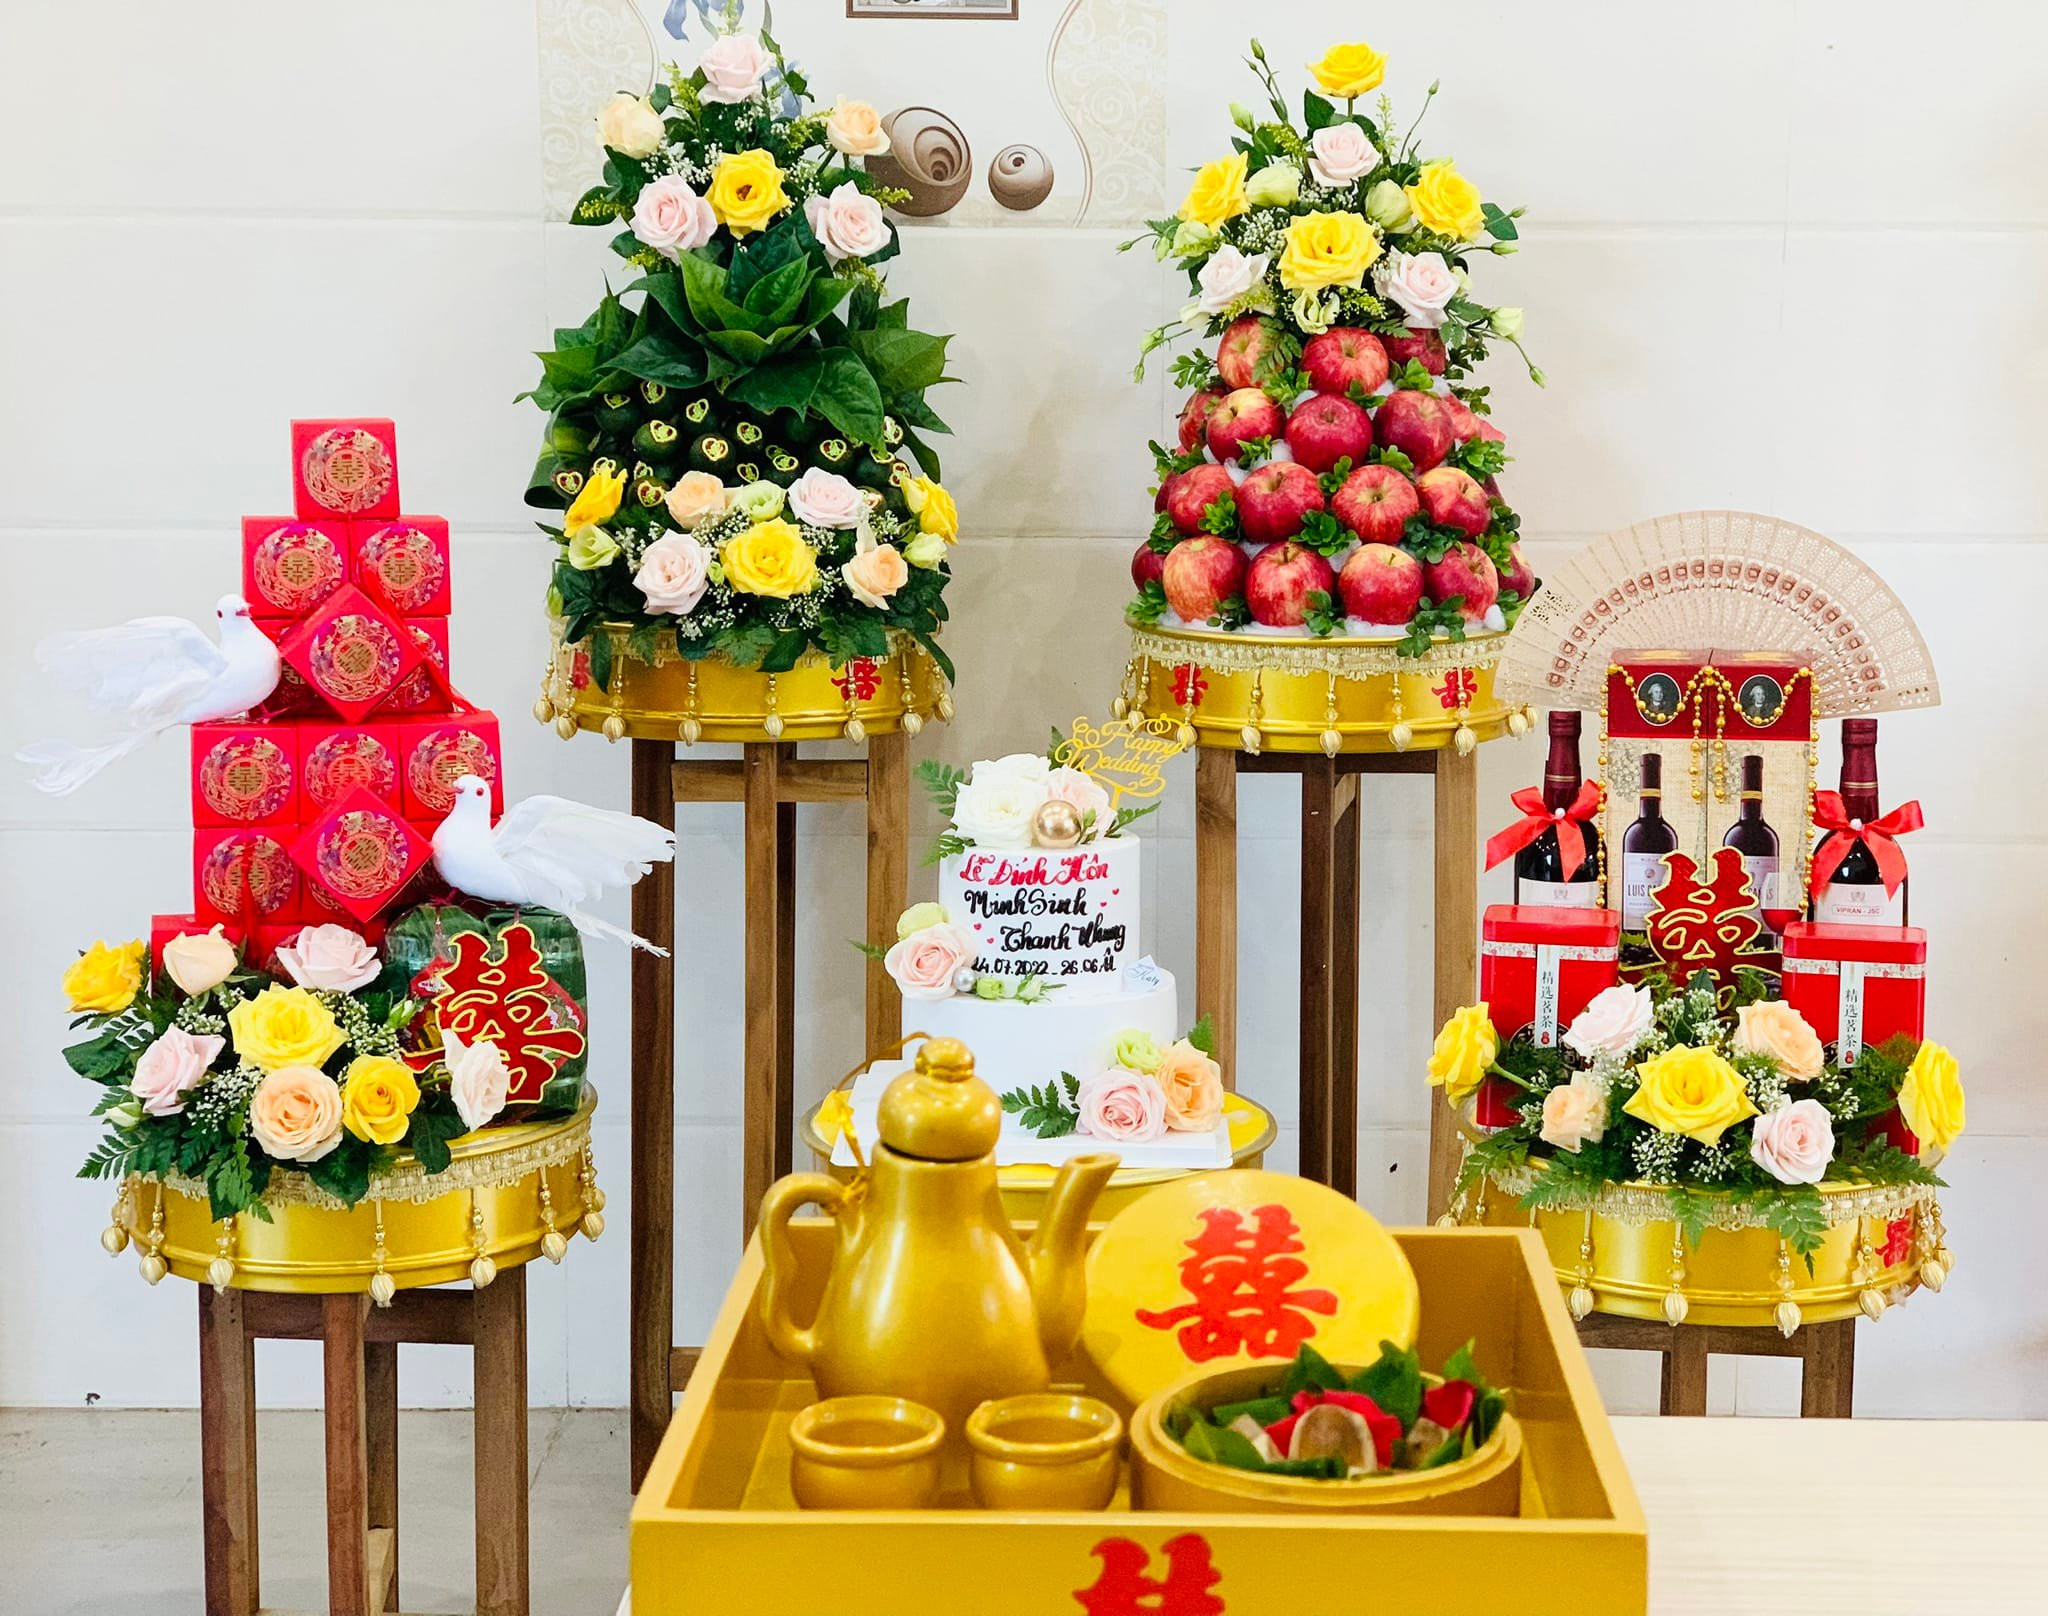 Tráp dạm ngõ - Mâm quả cưới hỏi ở Tây Ninh